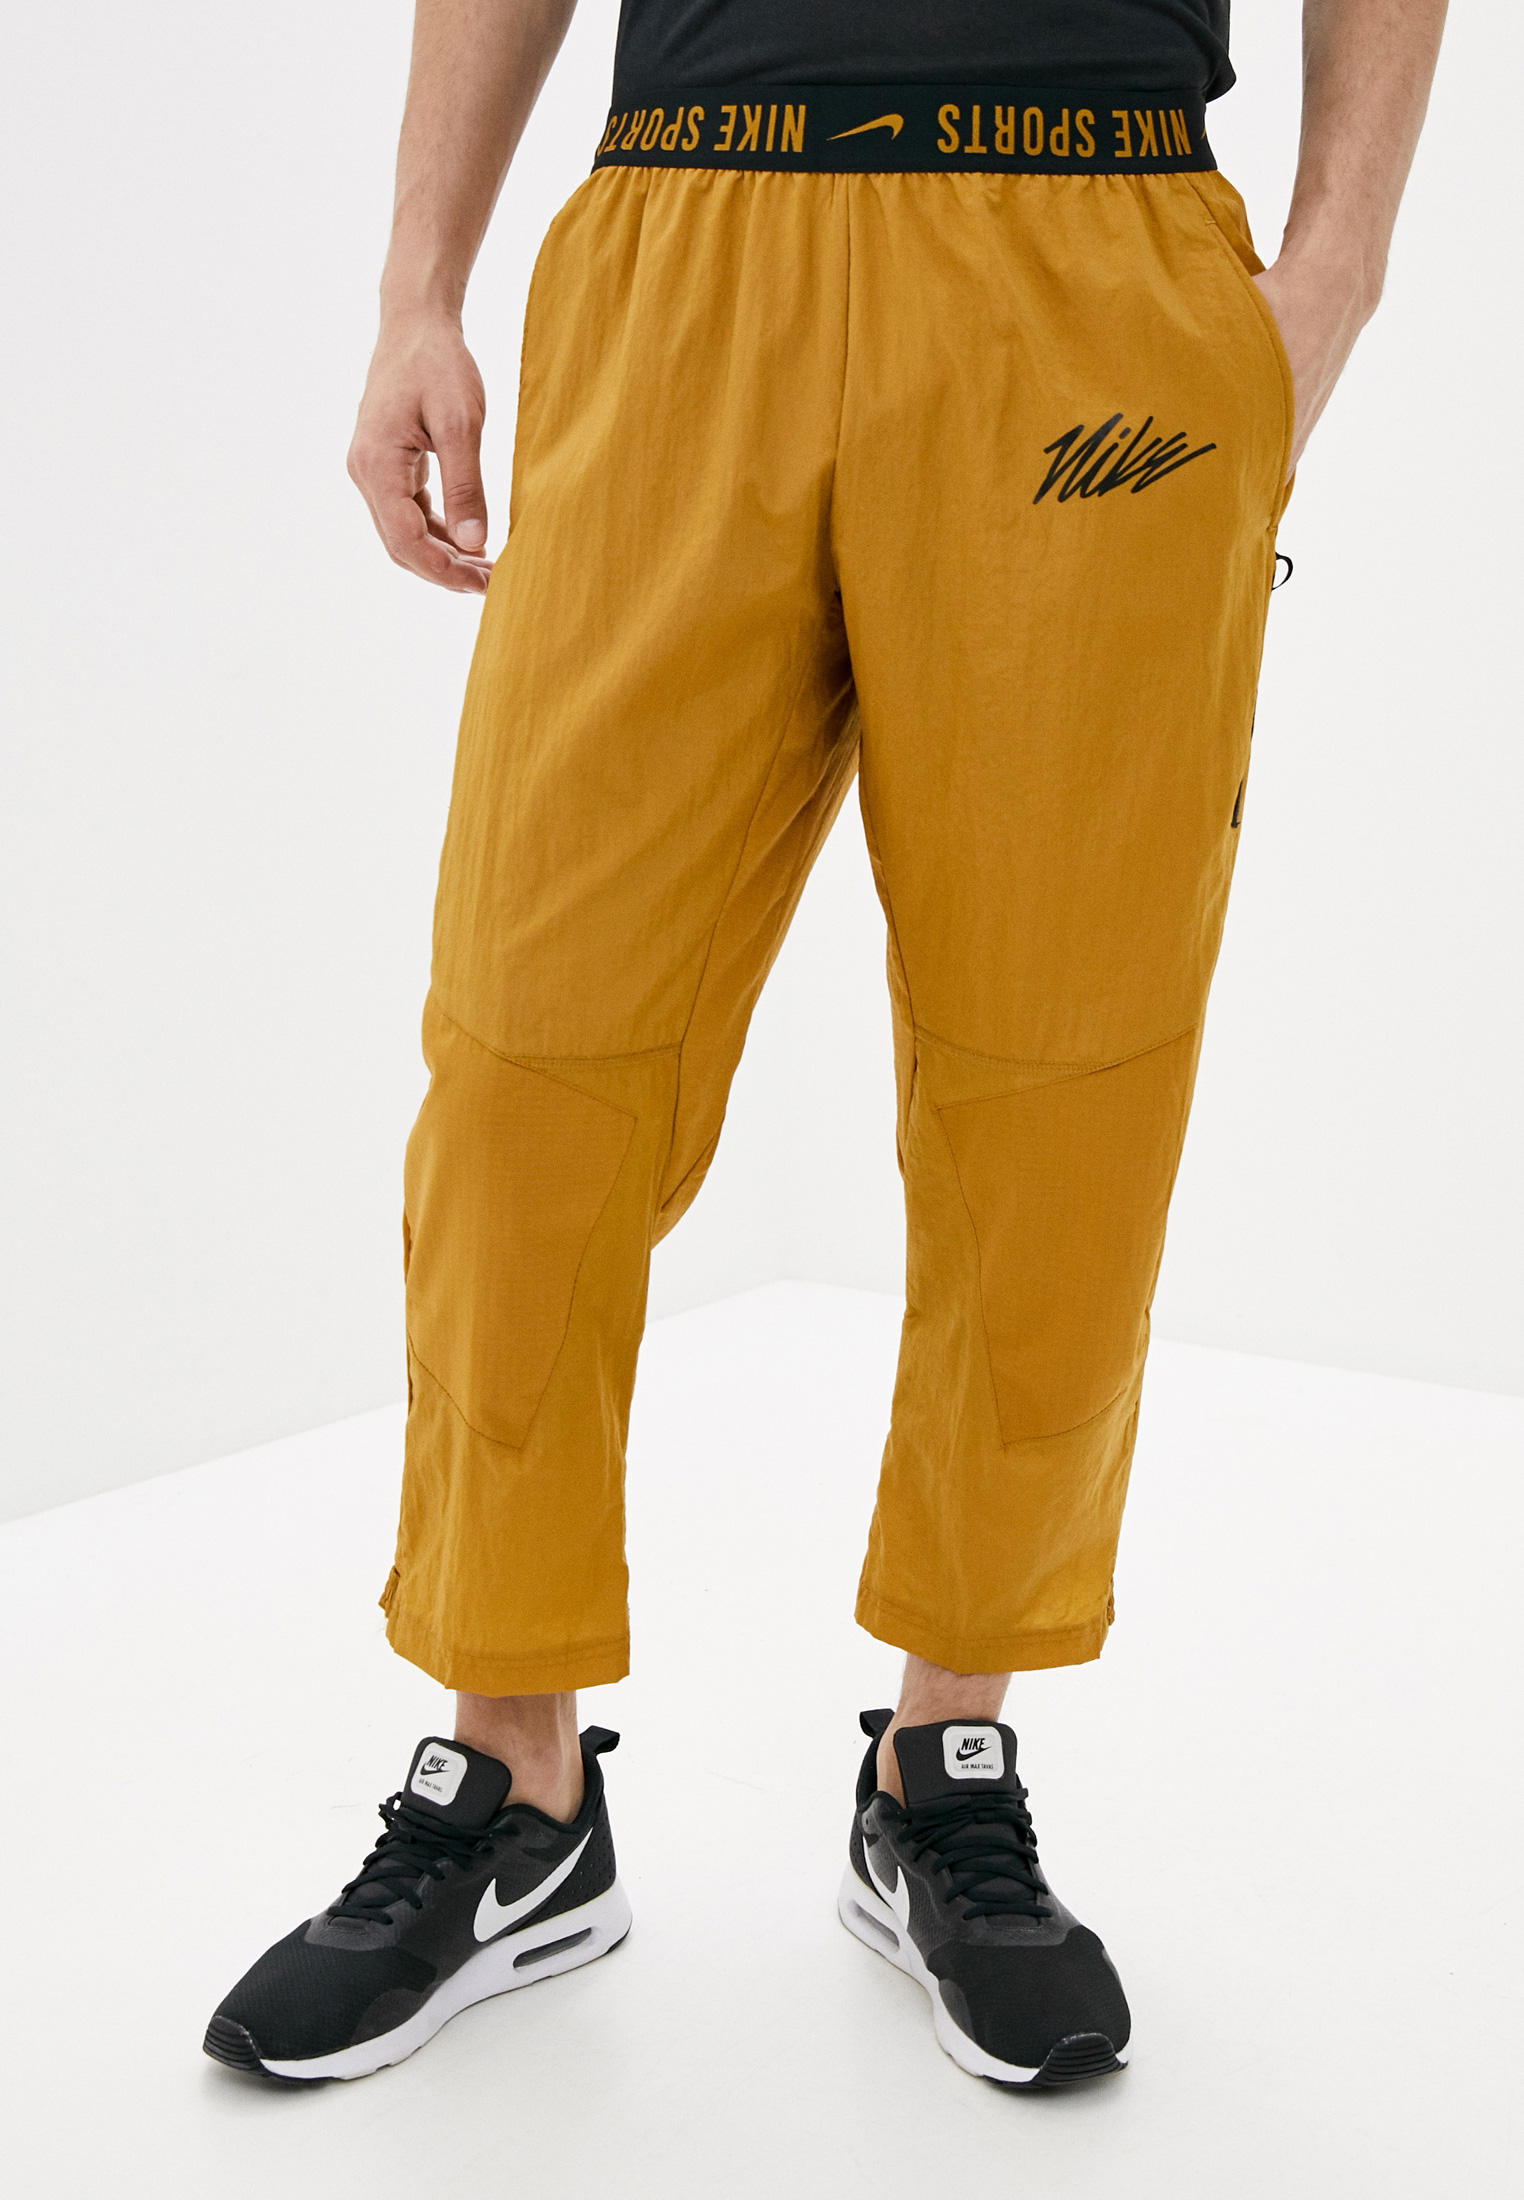 Желтые штаны мужские. Штаны Nike m NK Pant px. Спортивные брюки Nike m NK Pant px. Nike cj4629 брюки спортивные. Желтые штаны найк.